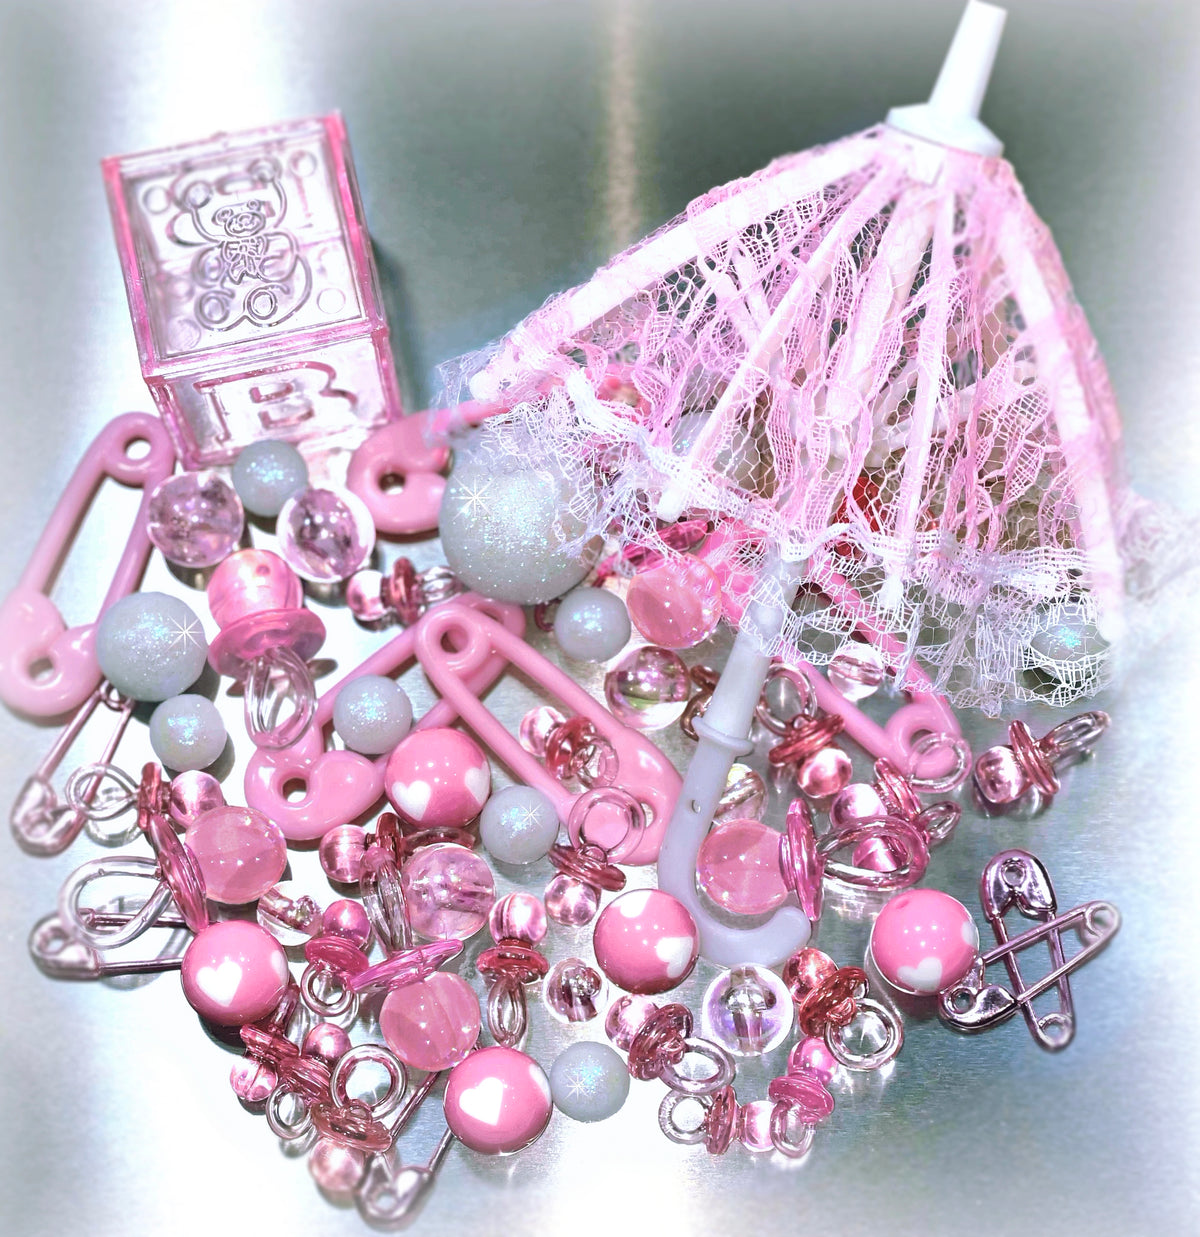 Set of 4 Pink String Beads